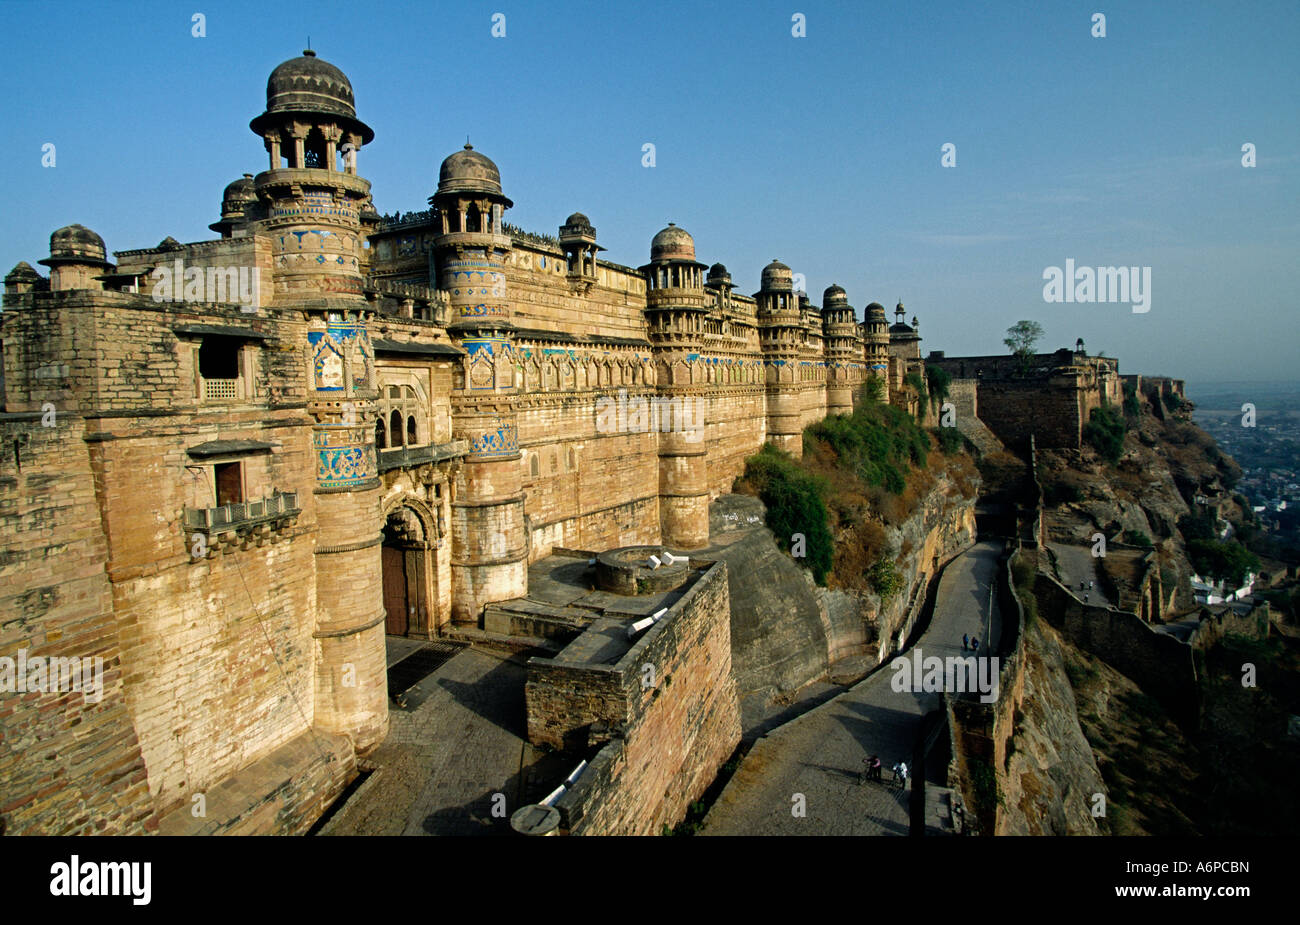 Man Mandir Palace dans le fort de Gwalior achevé en 1517 Banque D'Images